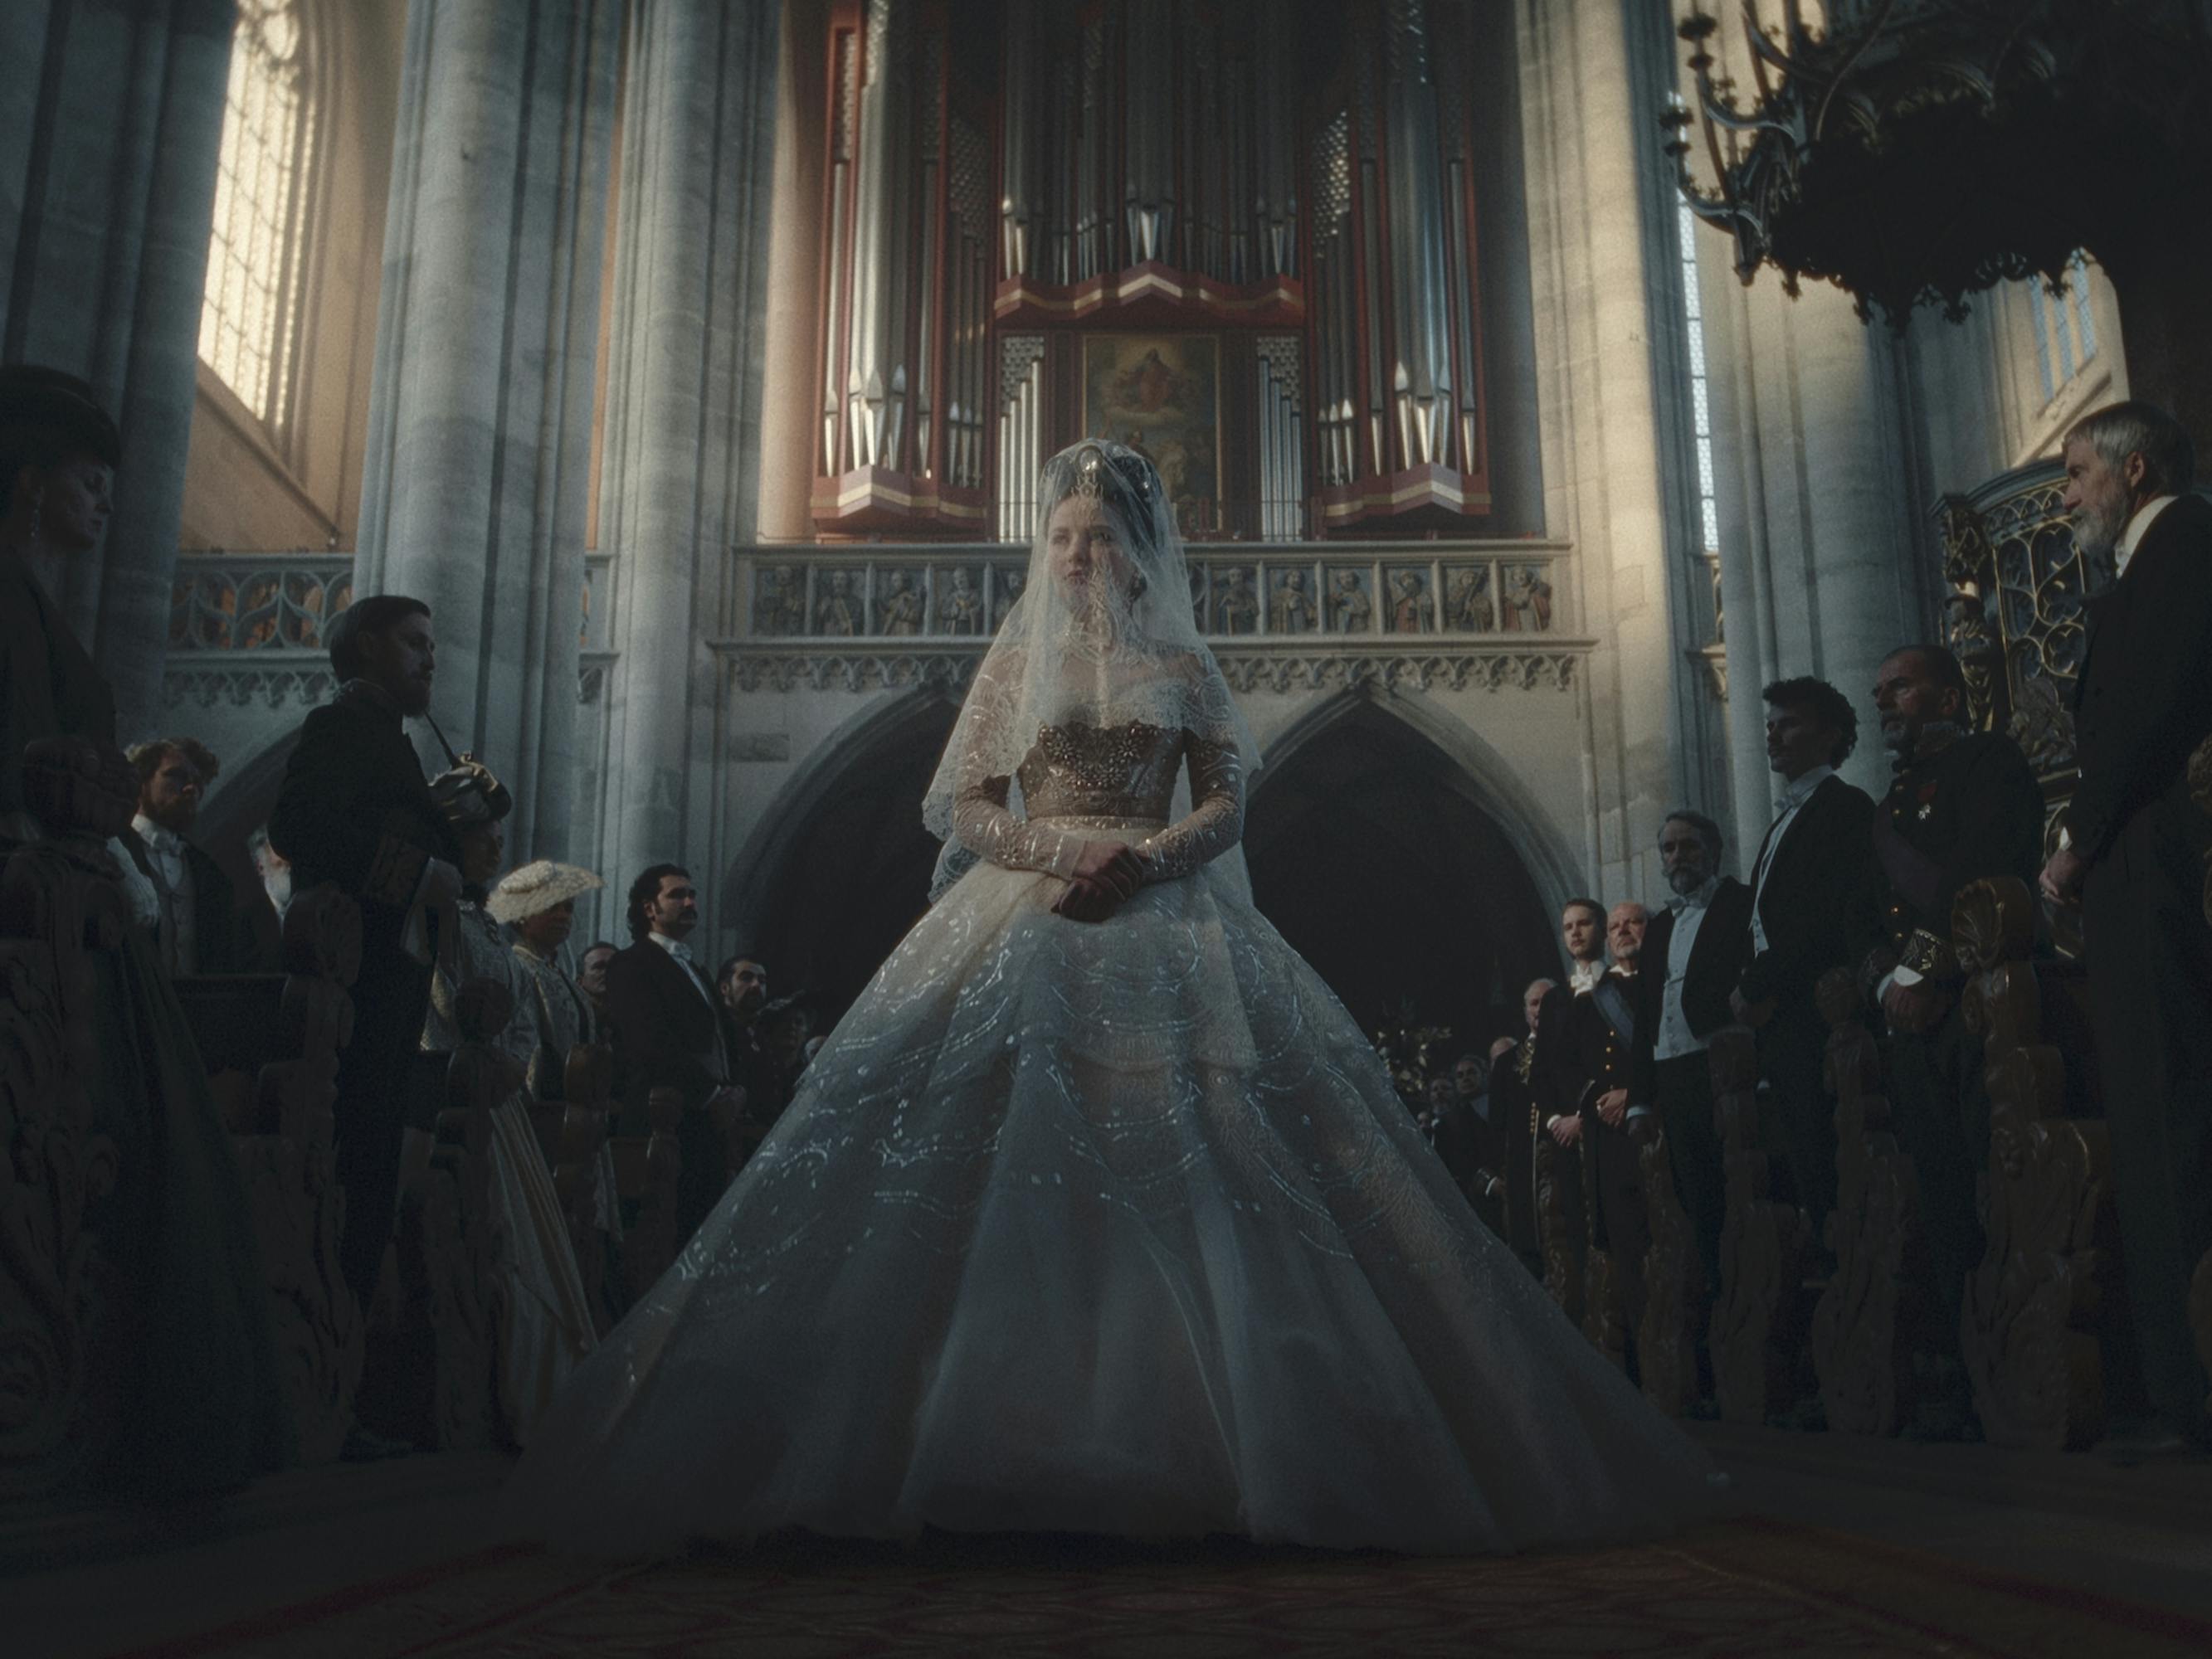 Elisabeth (Devrim Lingnau) wears an elaborate wedding dress and walks through a church.